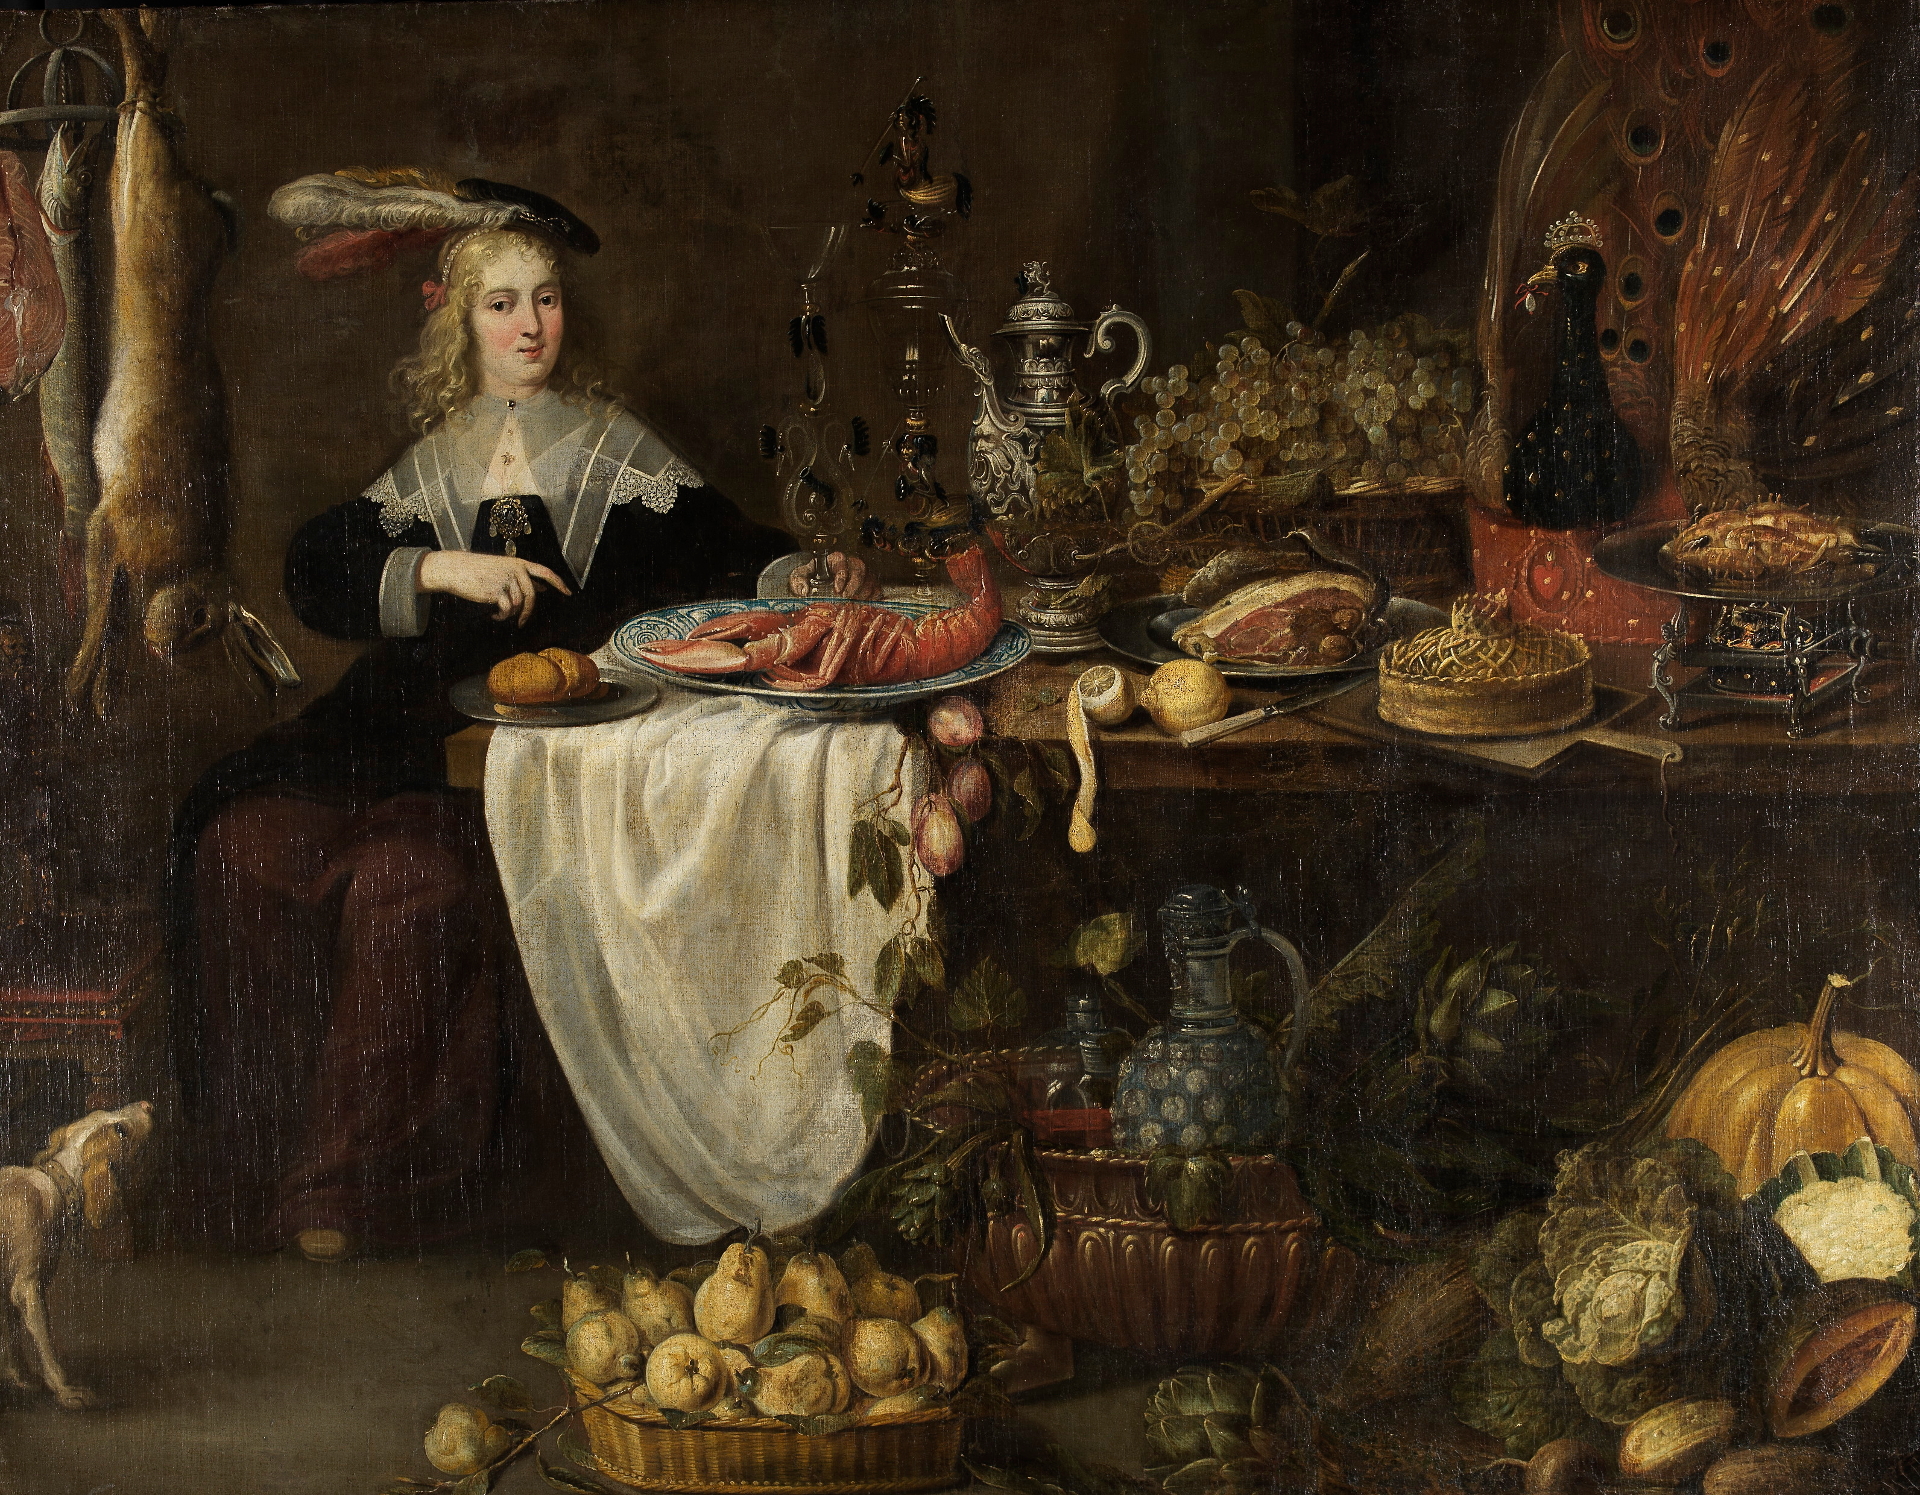 Tafelstilleben mit sitzender Dame von Adriaen van Utrecht. Zu sehen ist ein üppig gedeckter Tisch mit opulenten Tafelaufsätzen. Am Kopfende sitz eine vornehm gekleidete Dame mit Hut. Auf dem Boden stehen Körbe mit Lebensmitteln.